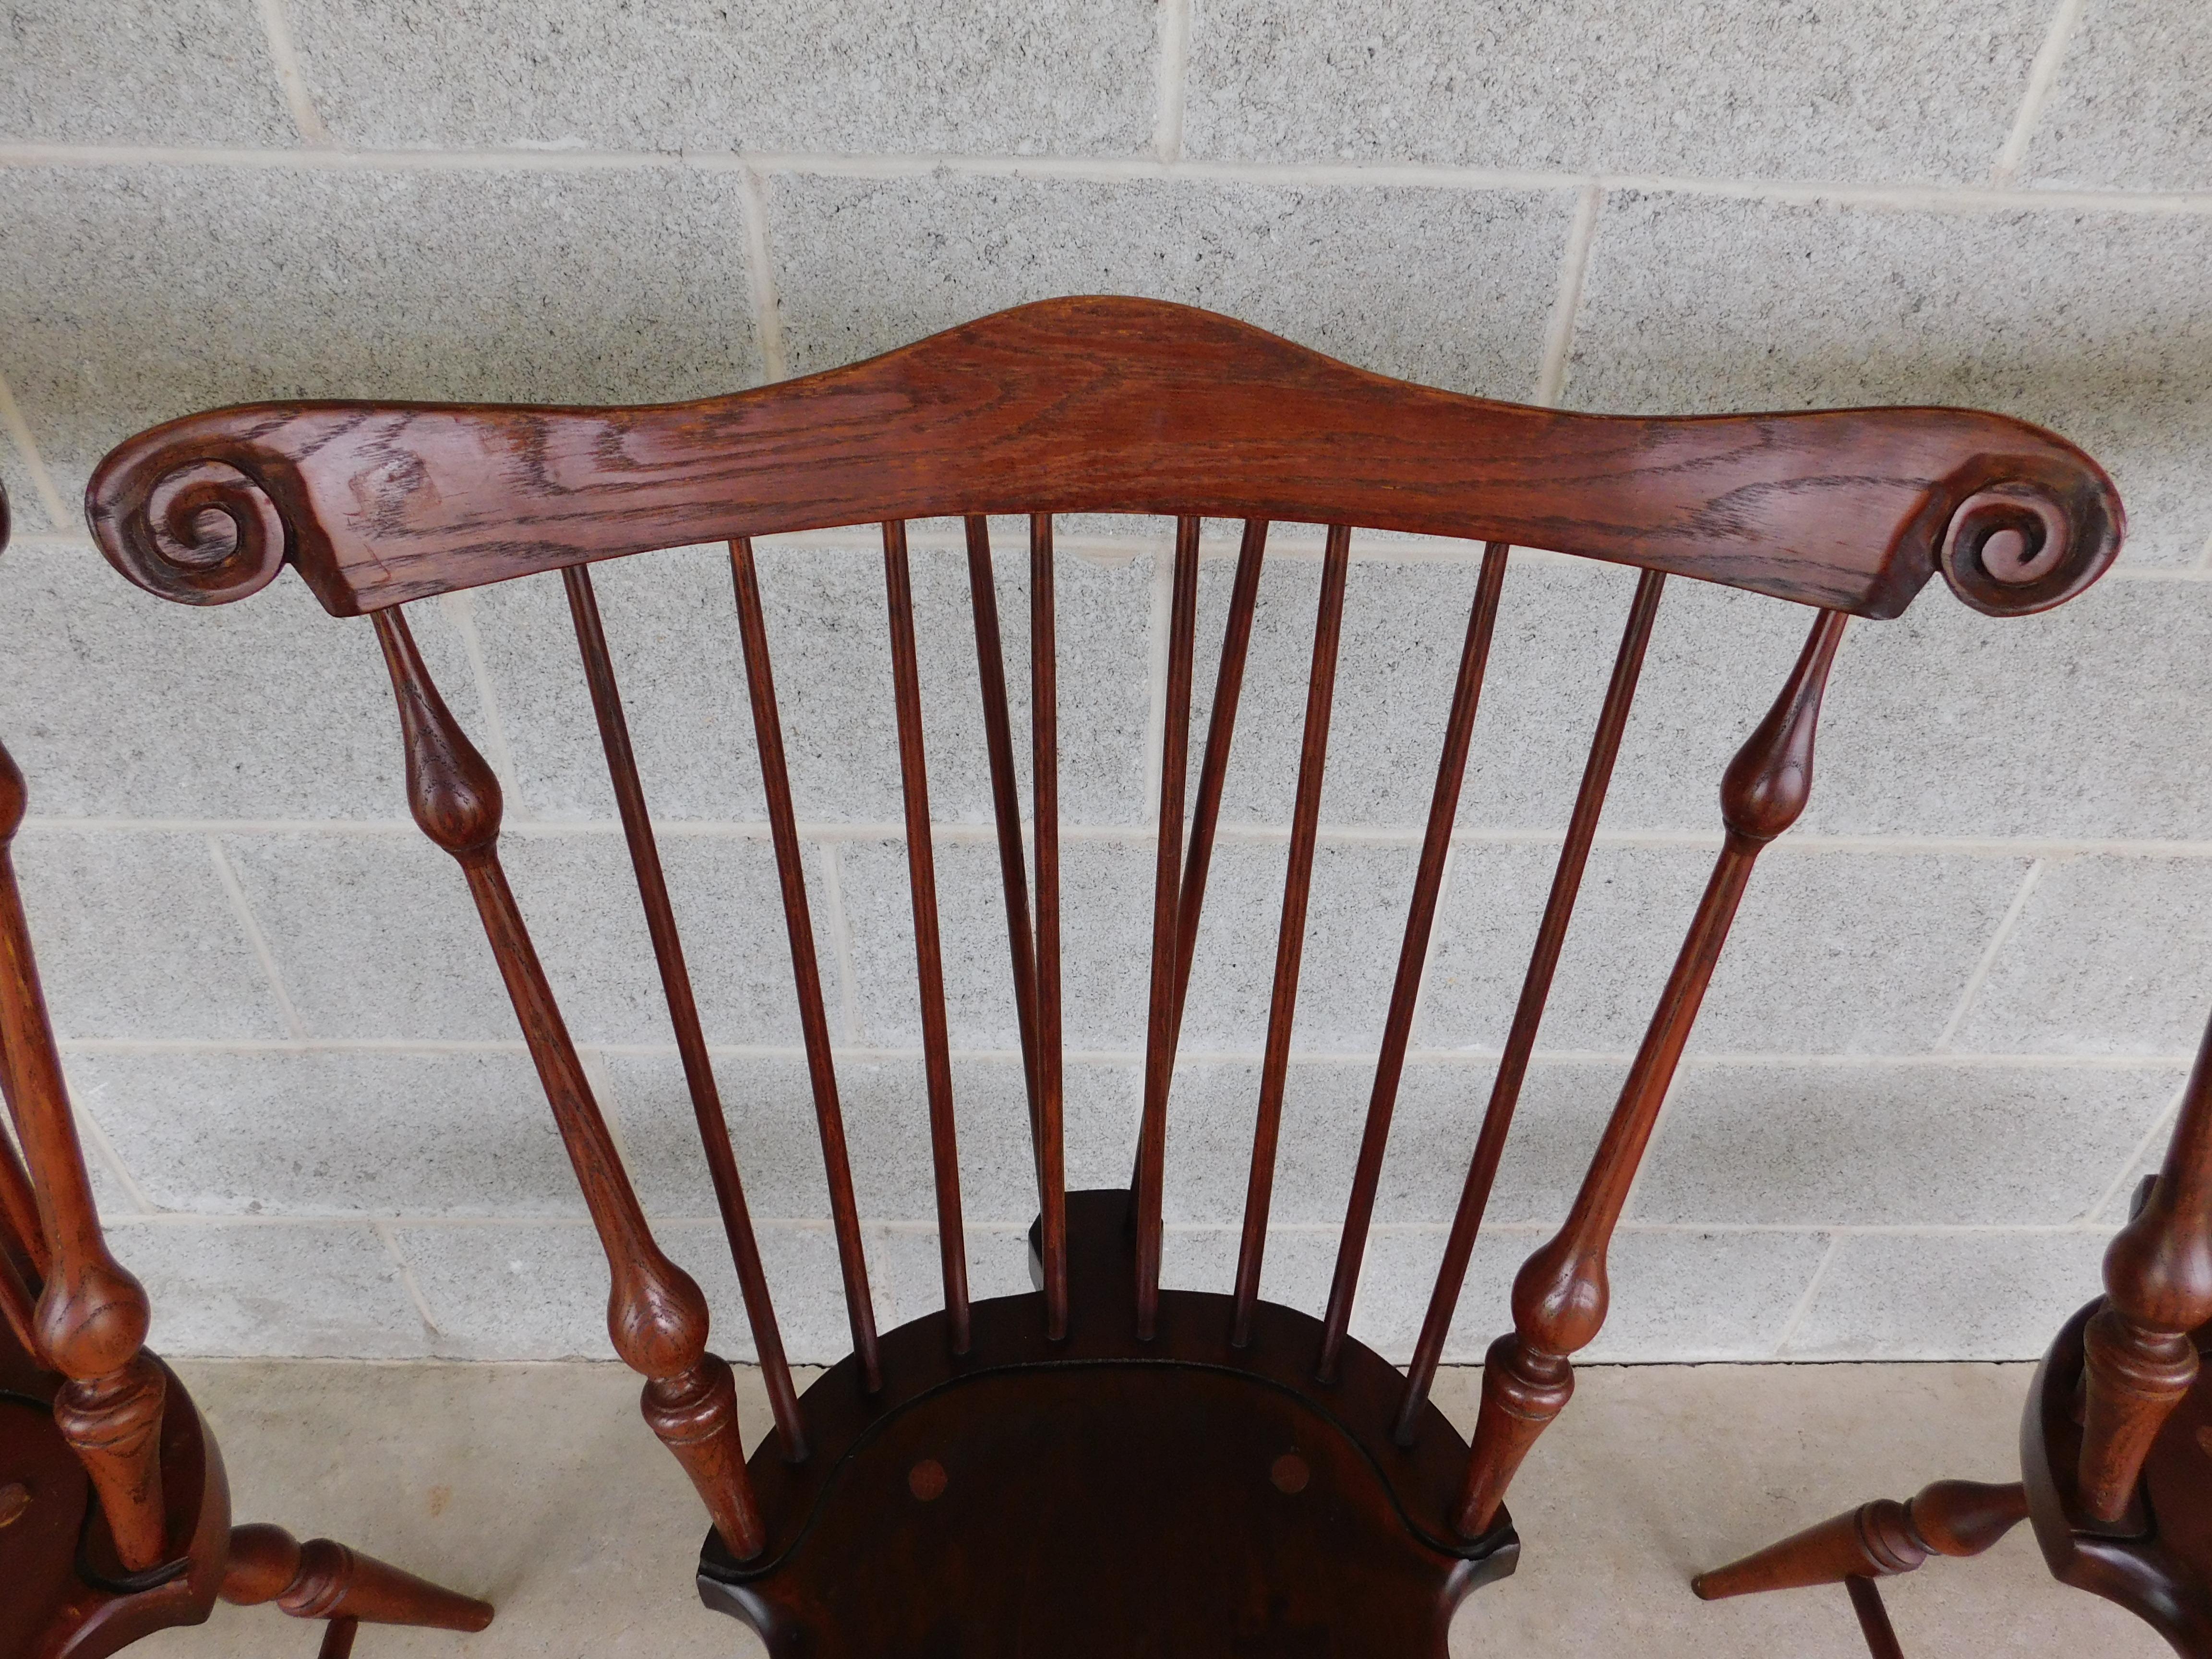 Windsor-Beistellstühle mit Fächerrückenlehne und Kettenrückenlehne von Tubb - 4er-Set (Holz)